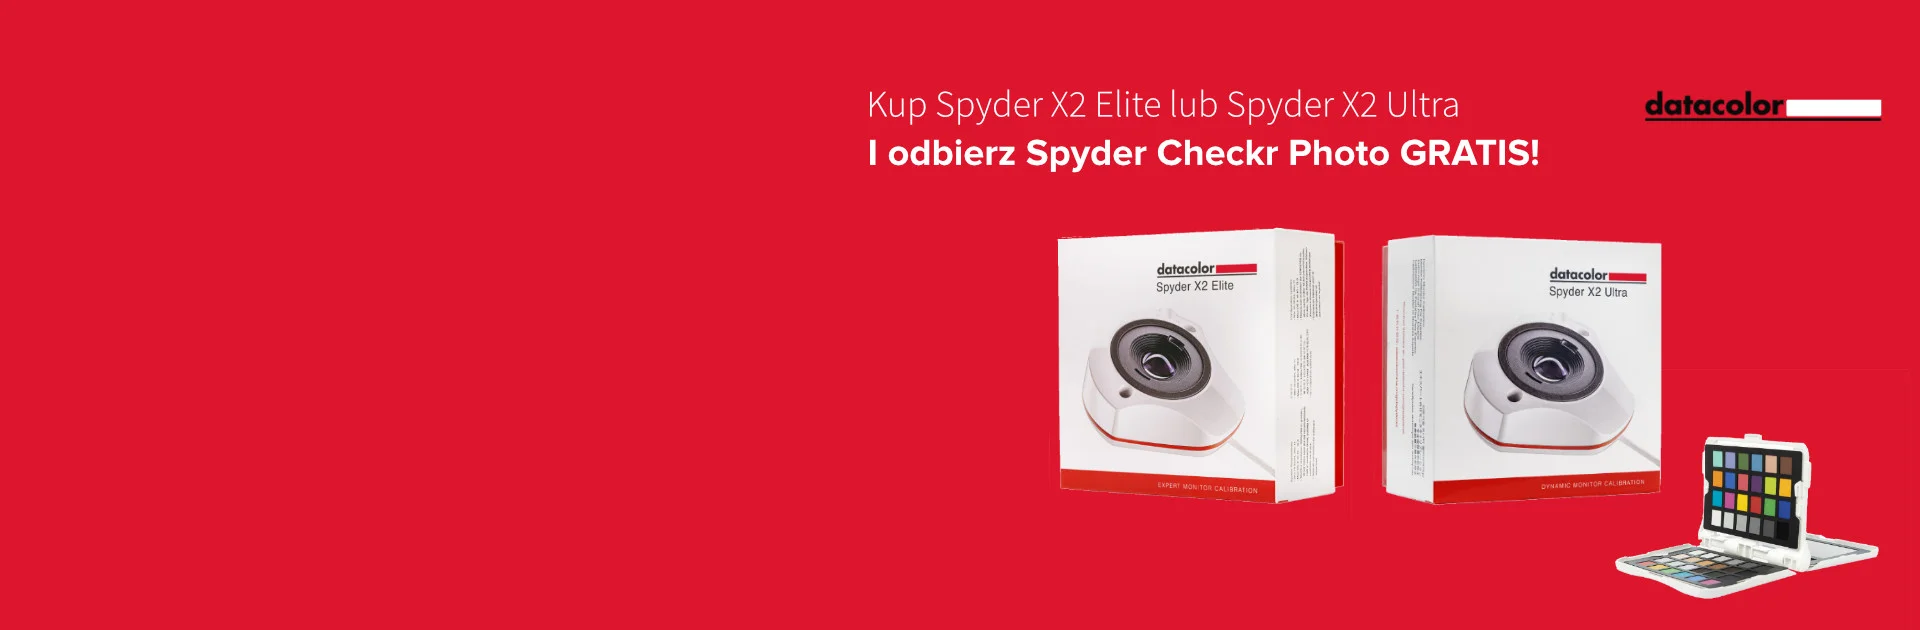 Kalibratory do monitorów Spyder X2 z promocją Spyder Checker Photo